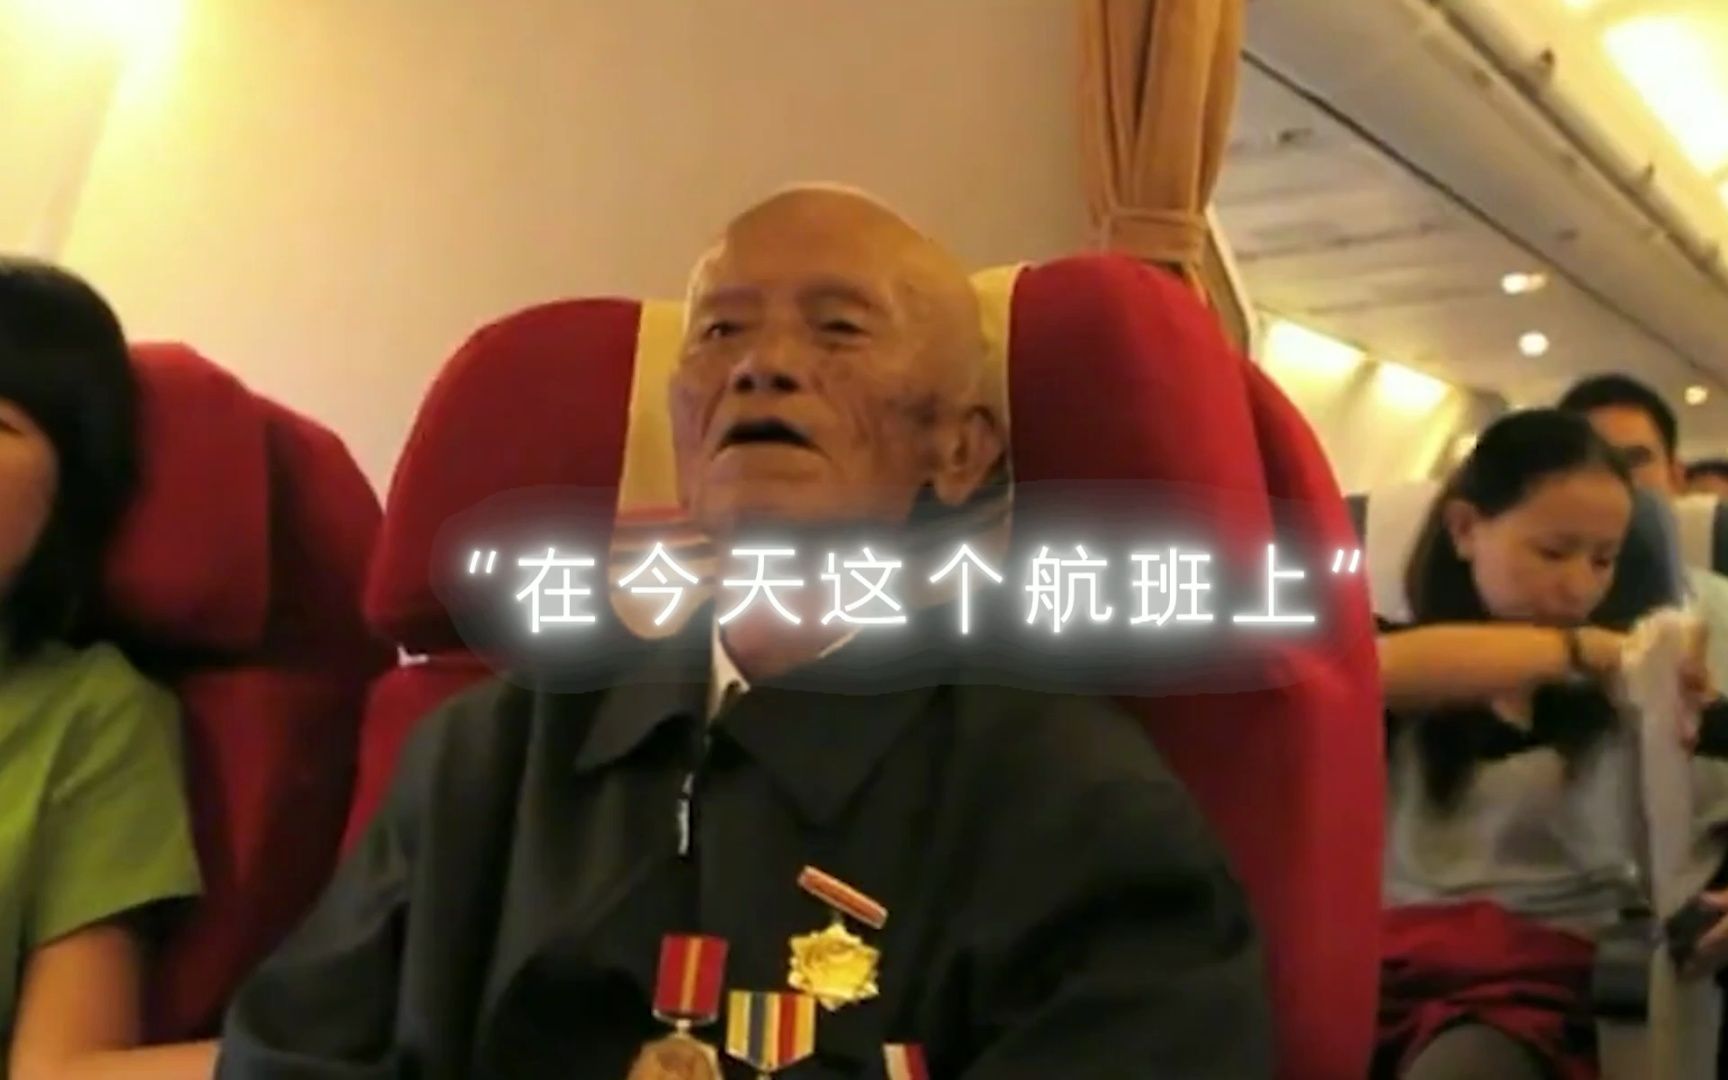 “在今天这个航班上有个特殊的旅客，中国远征军老兵，杨剑达先生，致敬！！”